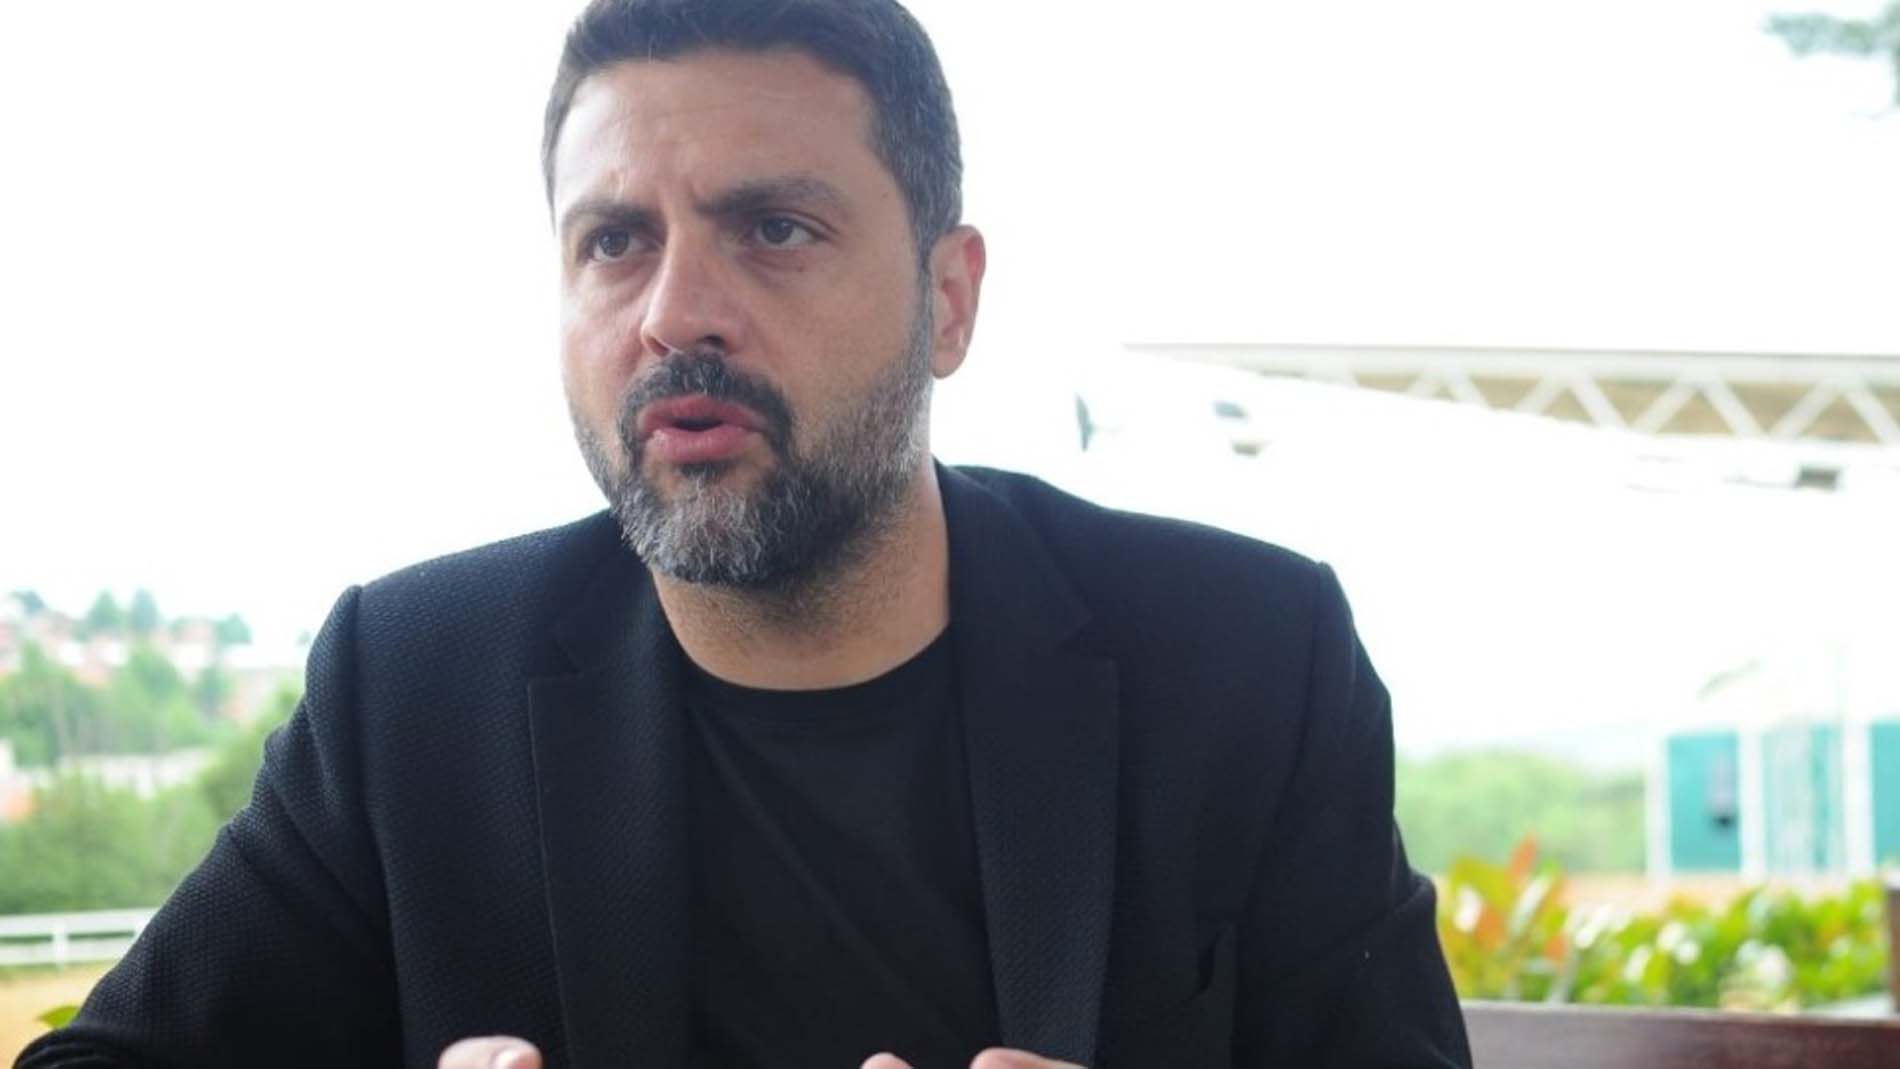 Şafak Mahmutyazıcıoğlu cinayetinde istenen cezalar belli oldu